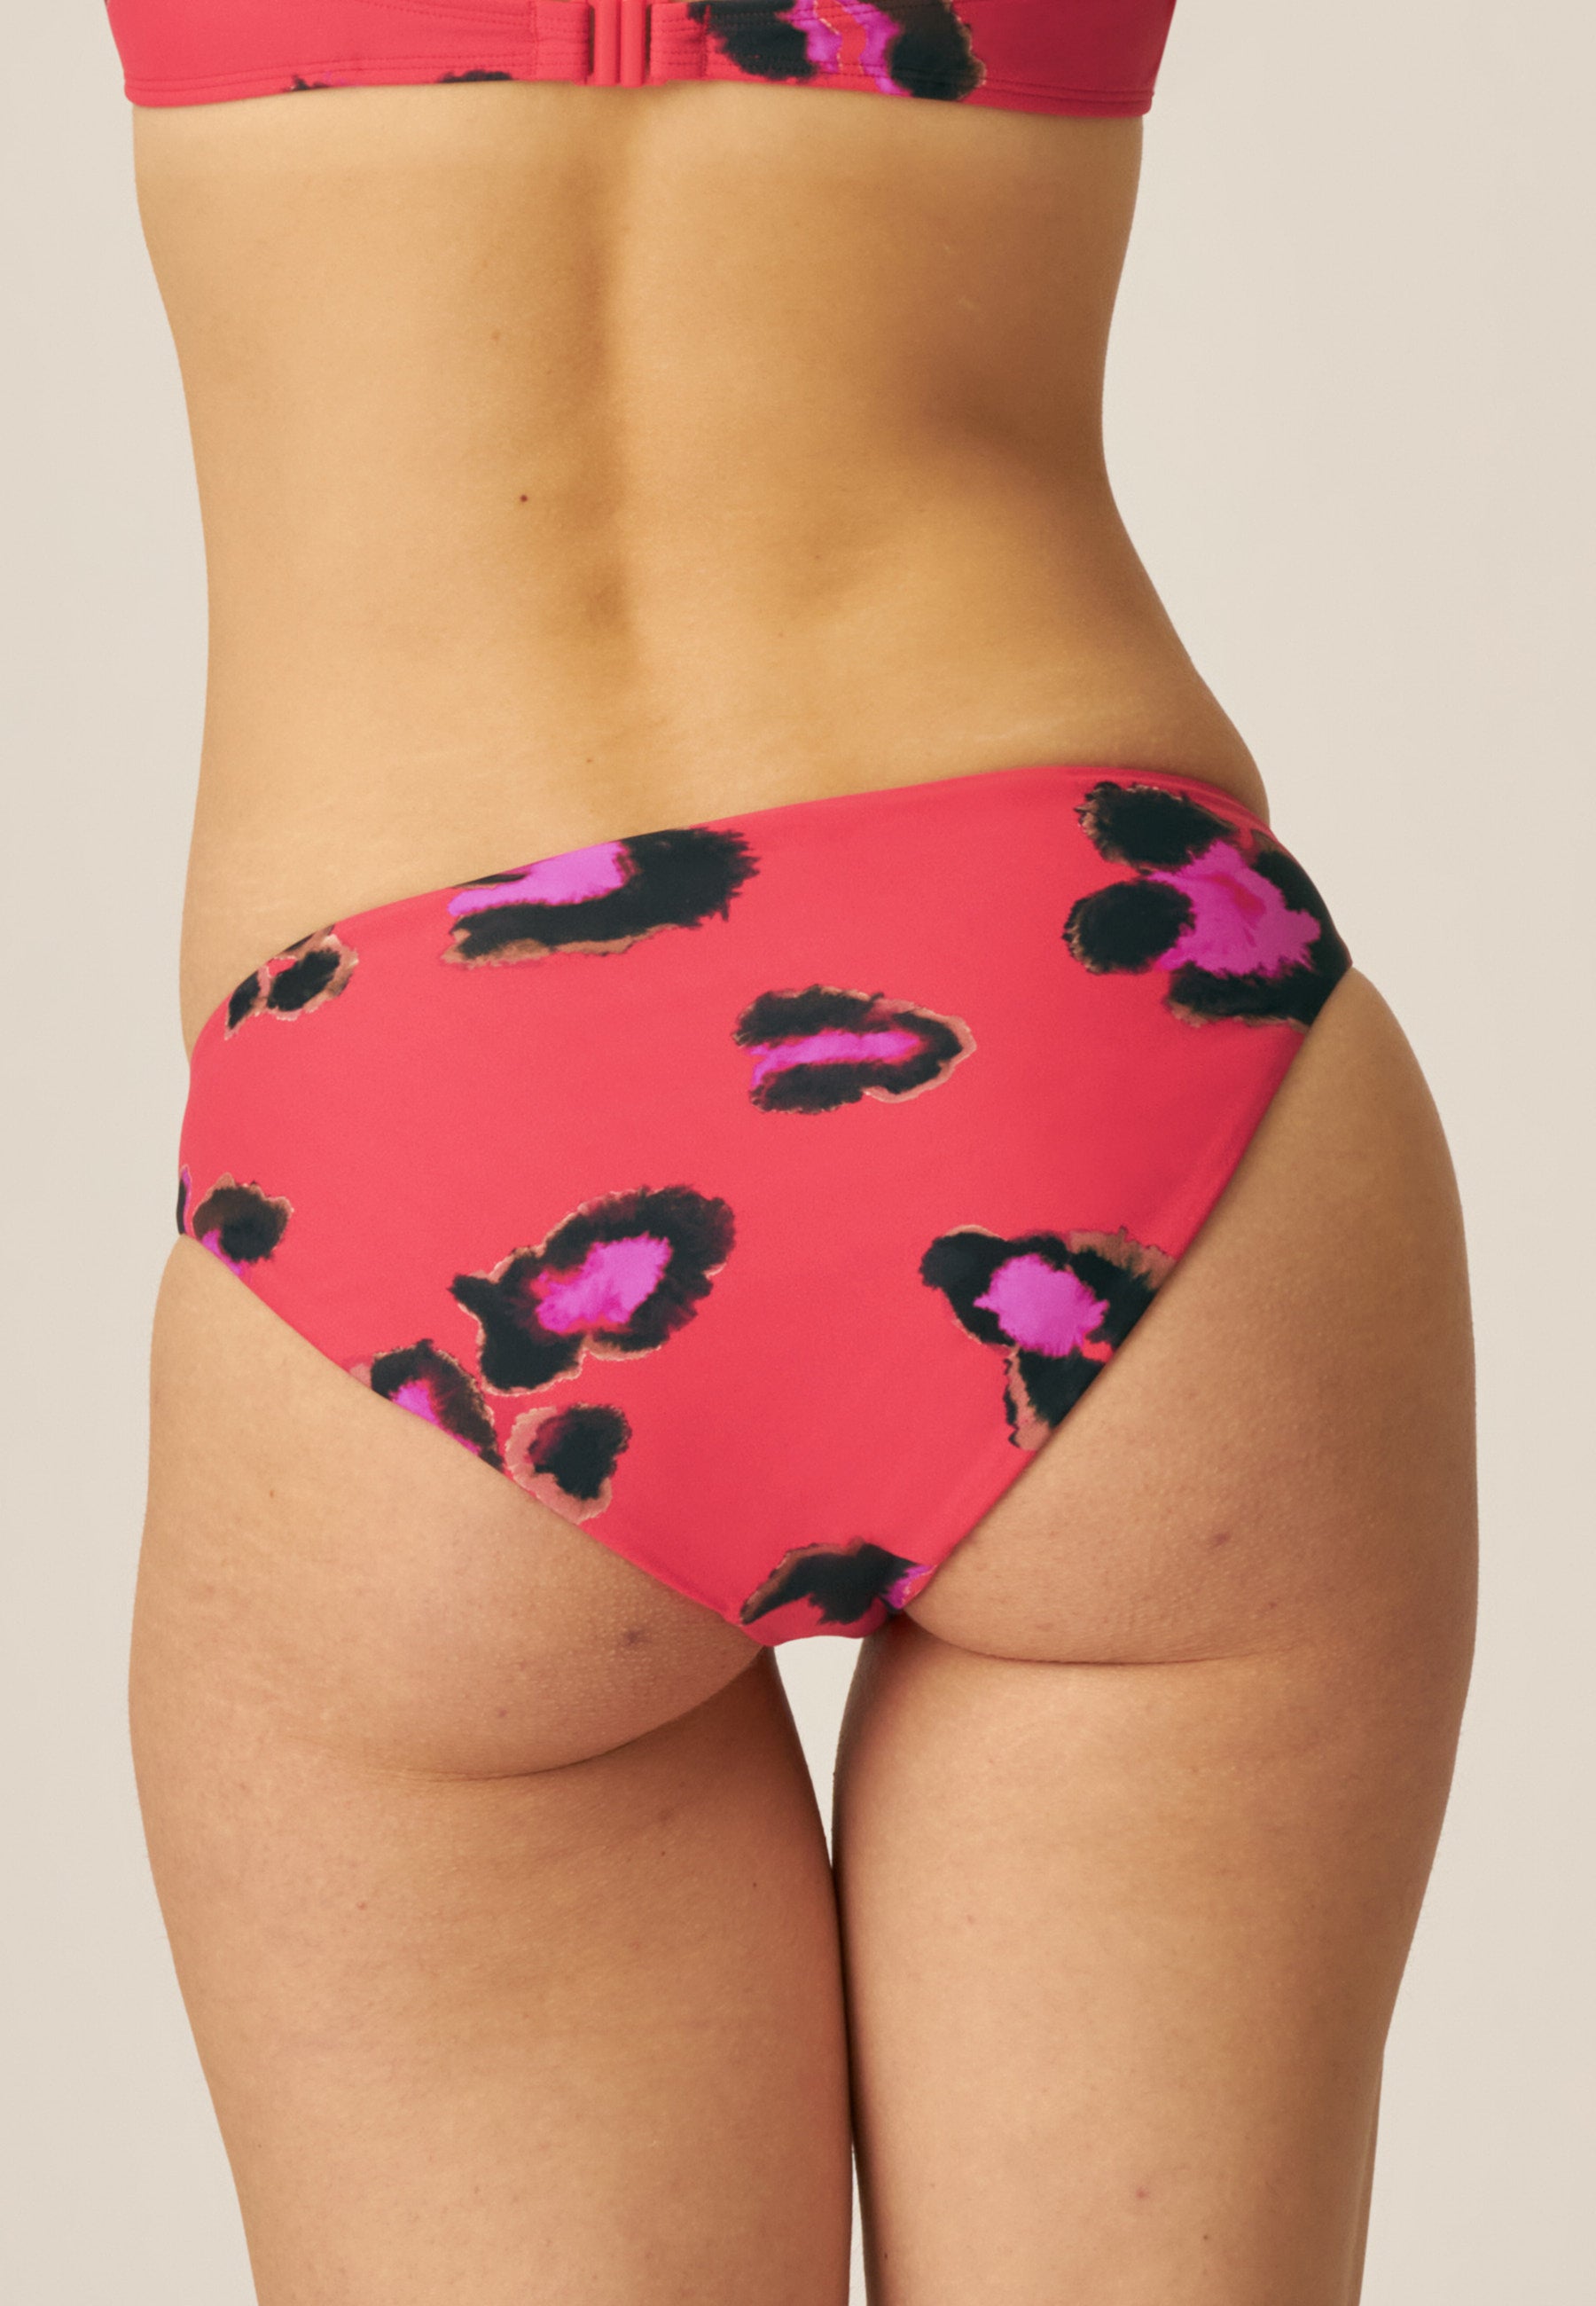 Leopard Print Bikini Bottom - Small Escapes / Safari Park - Red Brown Pink